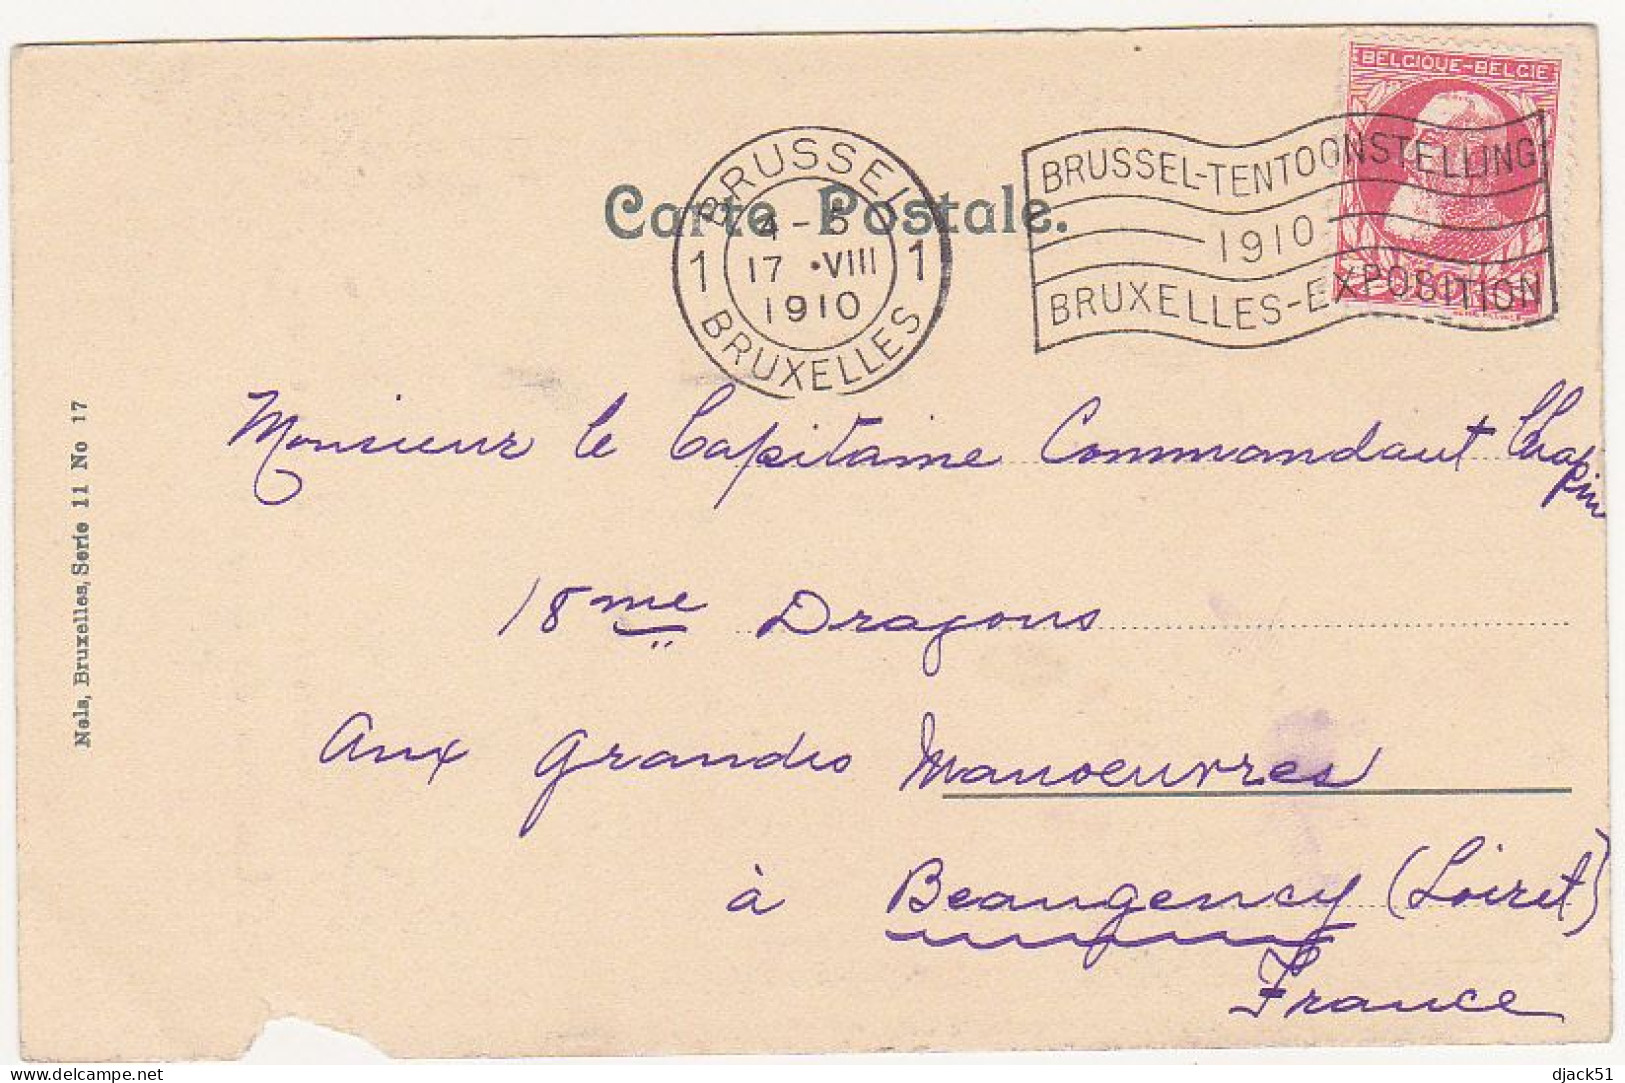 Belgique / Les Environs De Bruxelles / Le Château De Charles Albert à Boitsfort - 1910 - Ohne Zuordnung